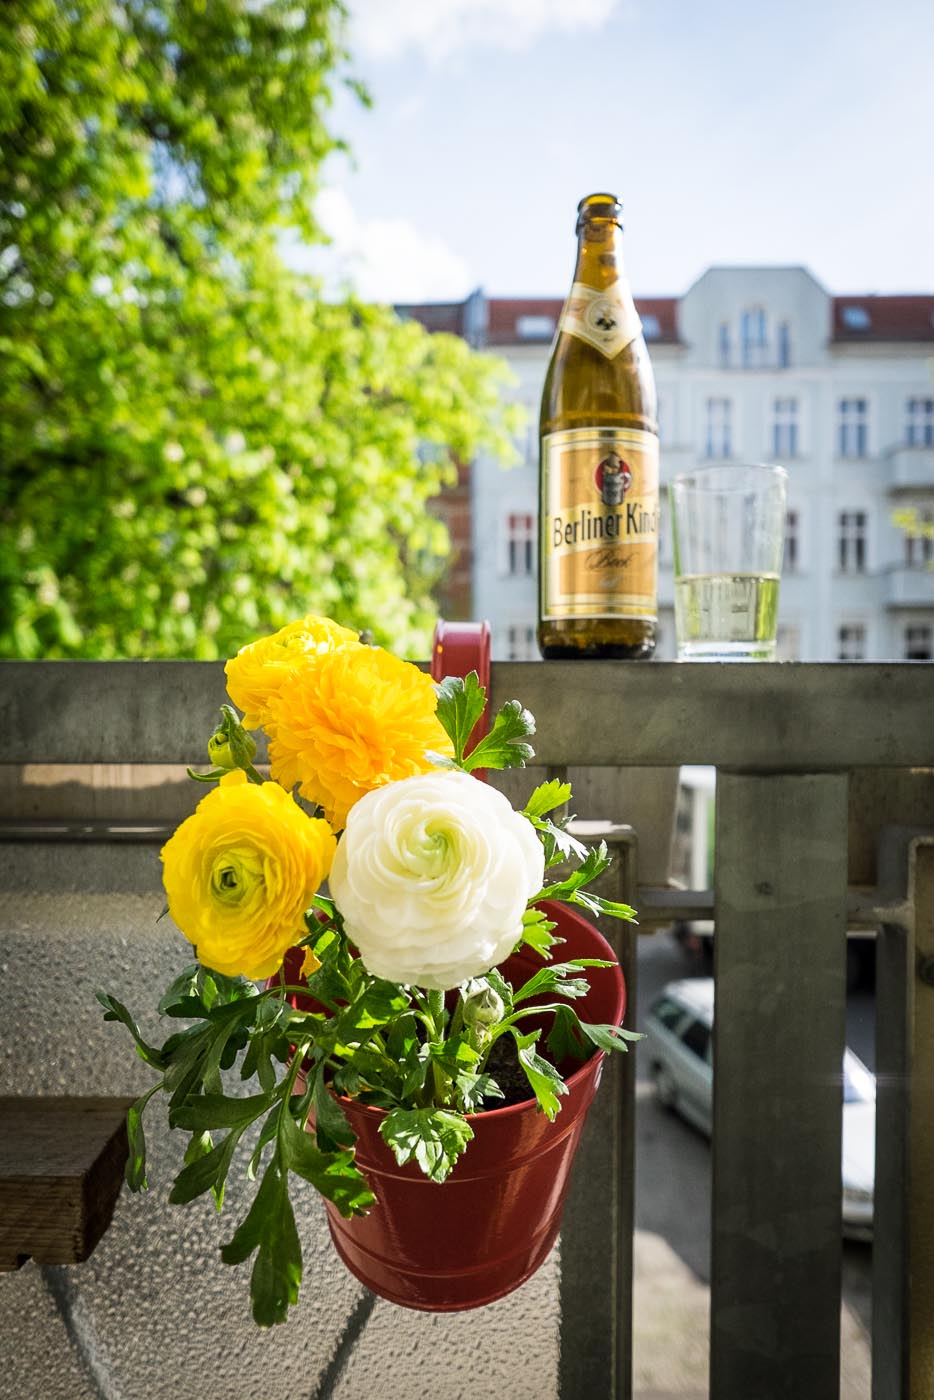 Flowers and beer in Berlin, Germany